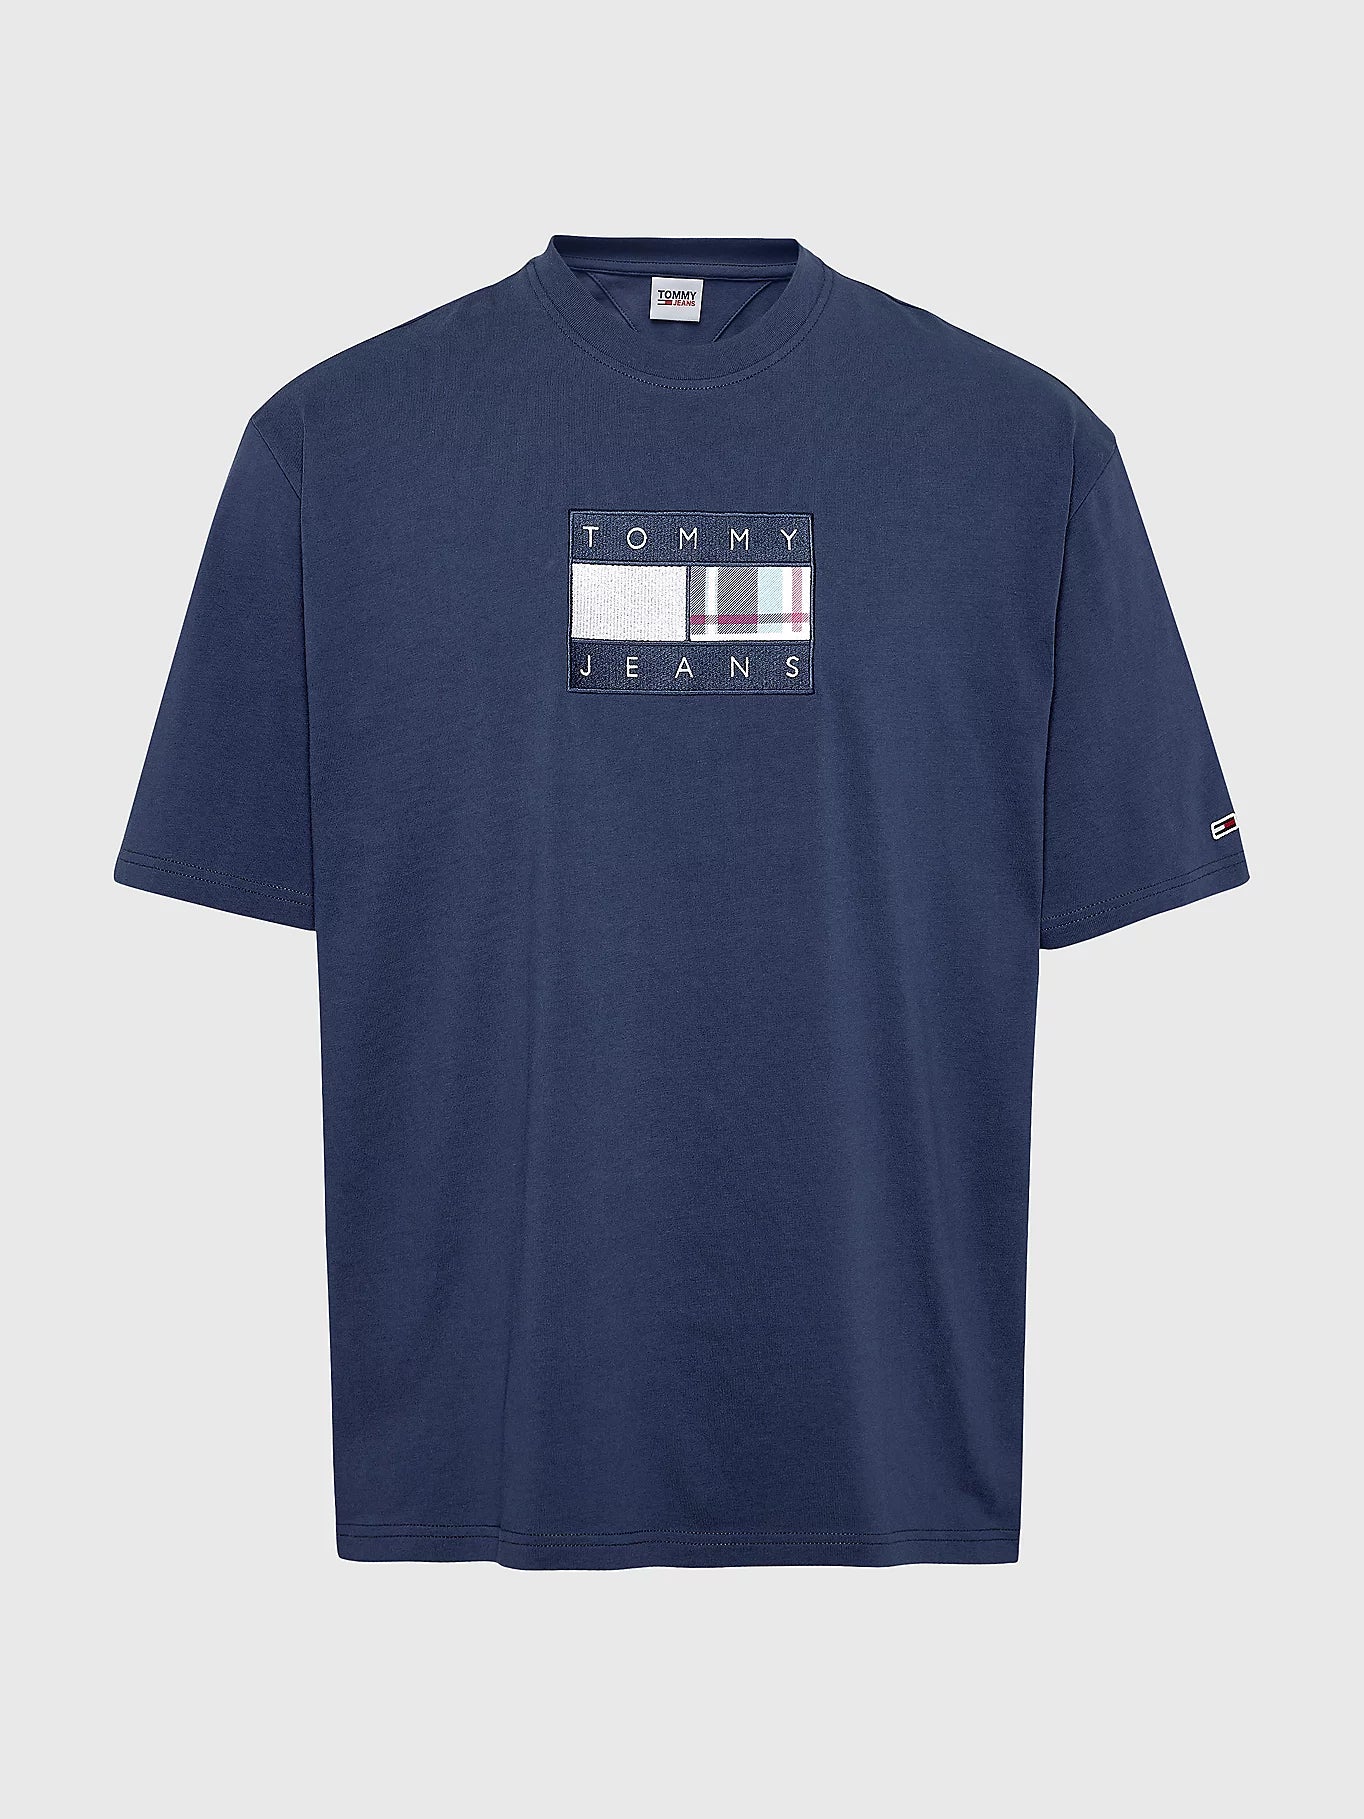 T-Shirt drapeau Tommy Jeans marine pour homme I Georgespaul